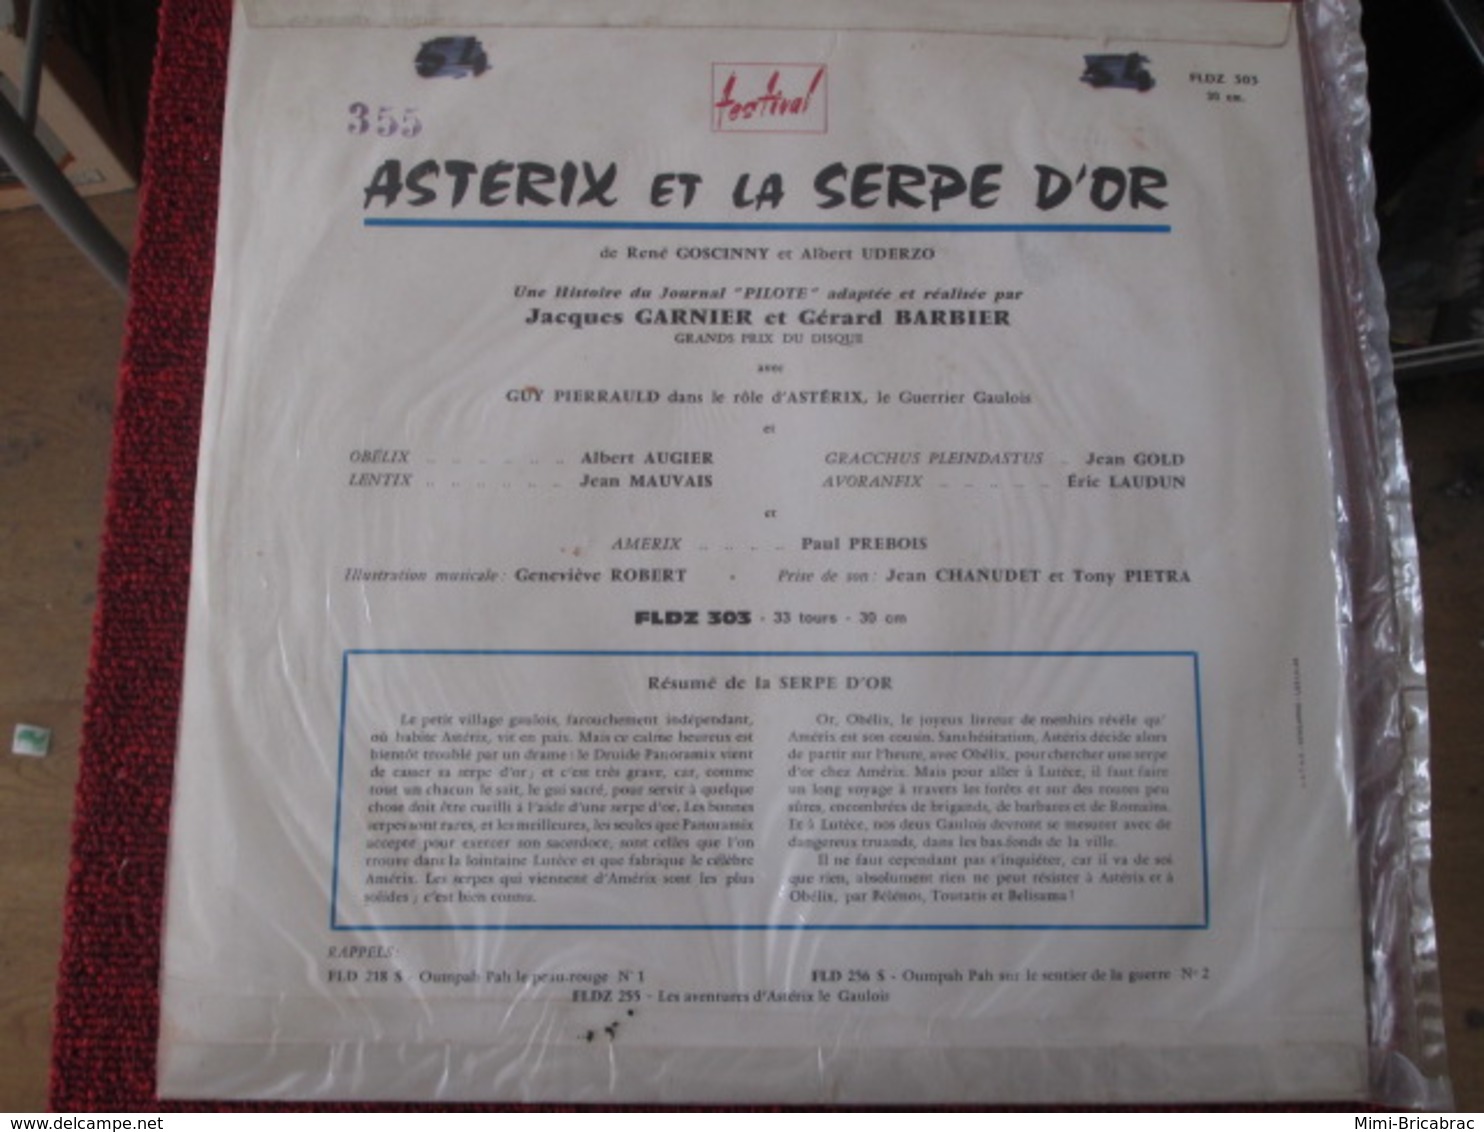 BACPLASTCAV Disque BANDES DESSINEE ANNEES 60 ASTERIX ET LA SERPE D'OR 33T 30cm - Records